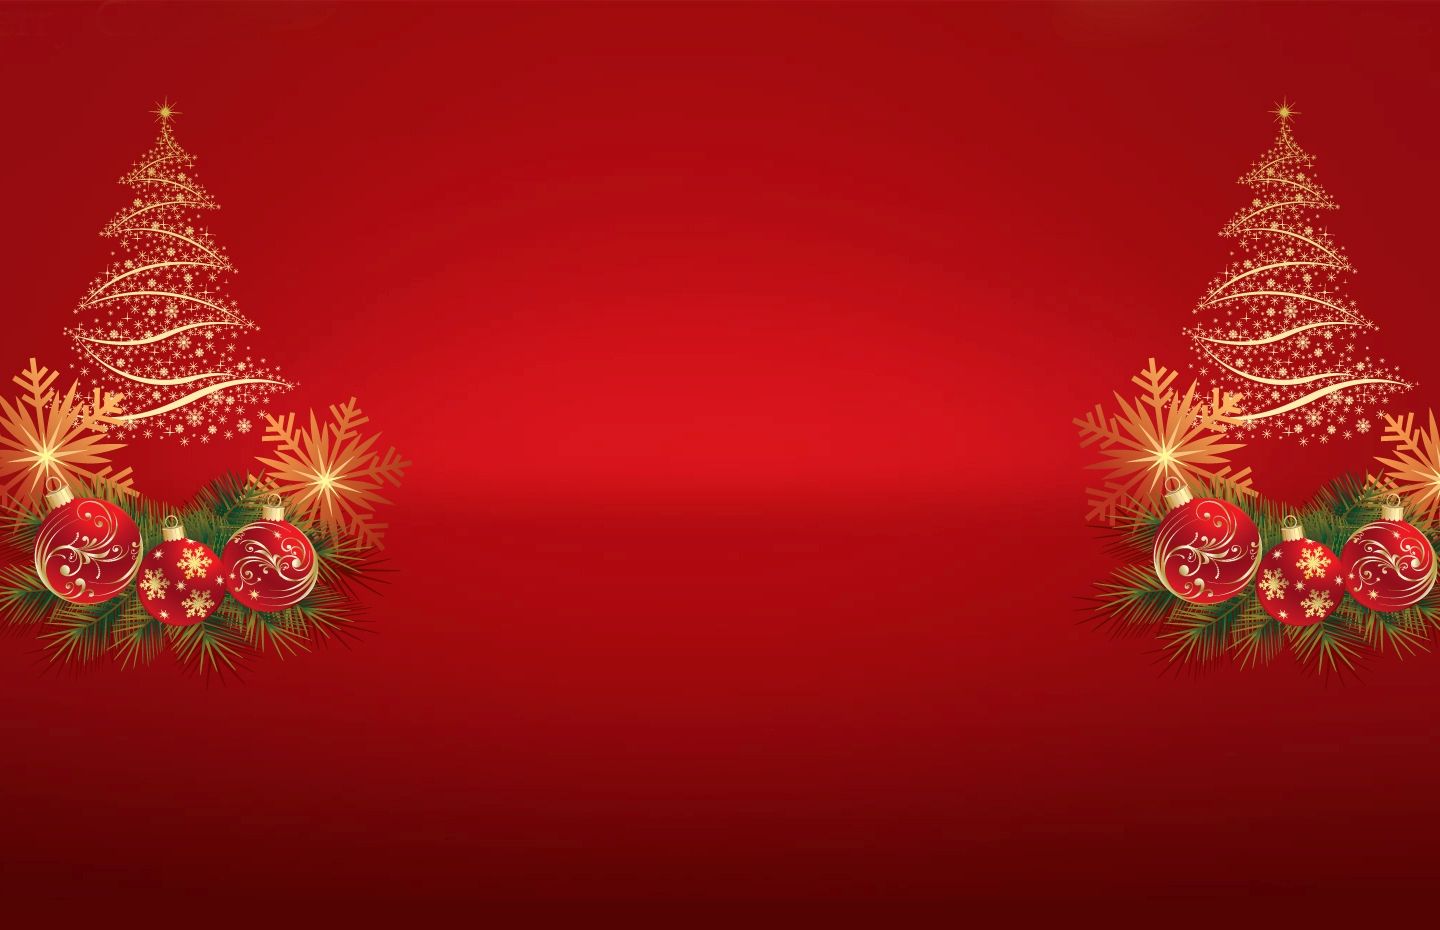 Hình nền Noel: Cùng tô điểm cho màn hình điện thoại của mình bằng những hình nền Noel tuyệt đẹp, đầy lãng mạn nhé! Với các bức tranh đến từ bộ sưu tập của chúng tôi, hình nền của bạn sẽ trở nên sống động và rực rỡ. Đừng bỏ lỡ cơ hội này, click ngay vào hình ảnh để tải về nhé!